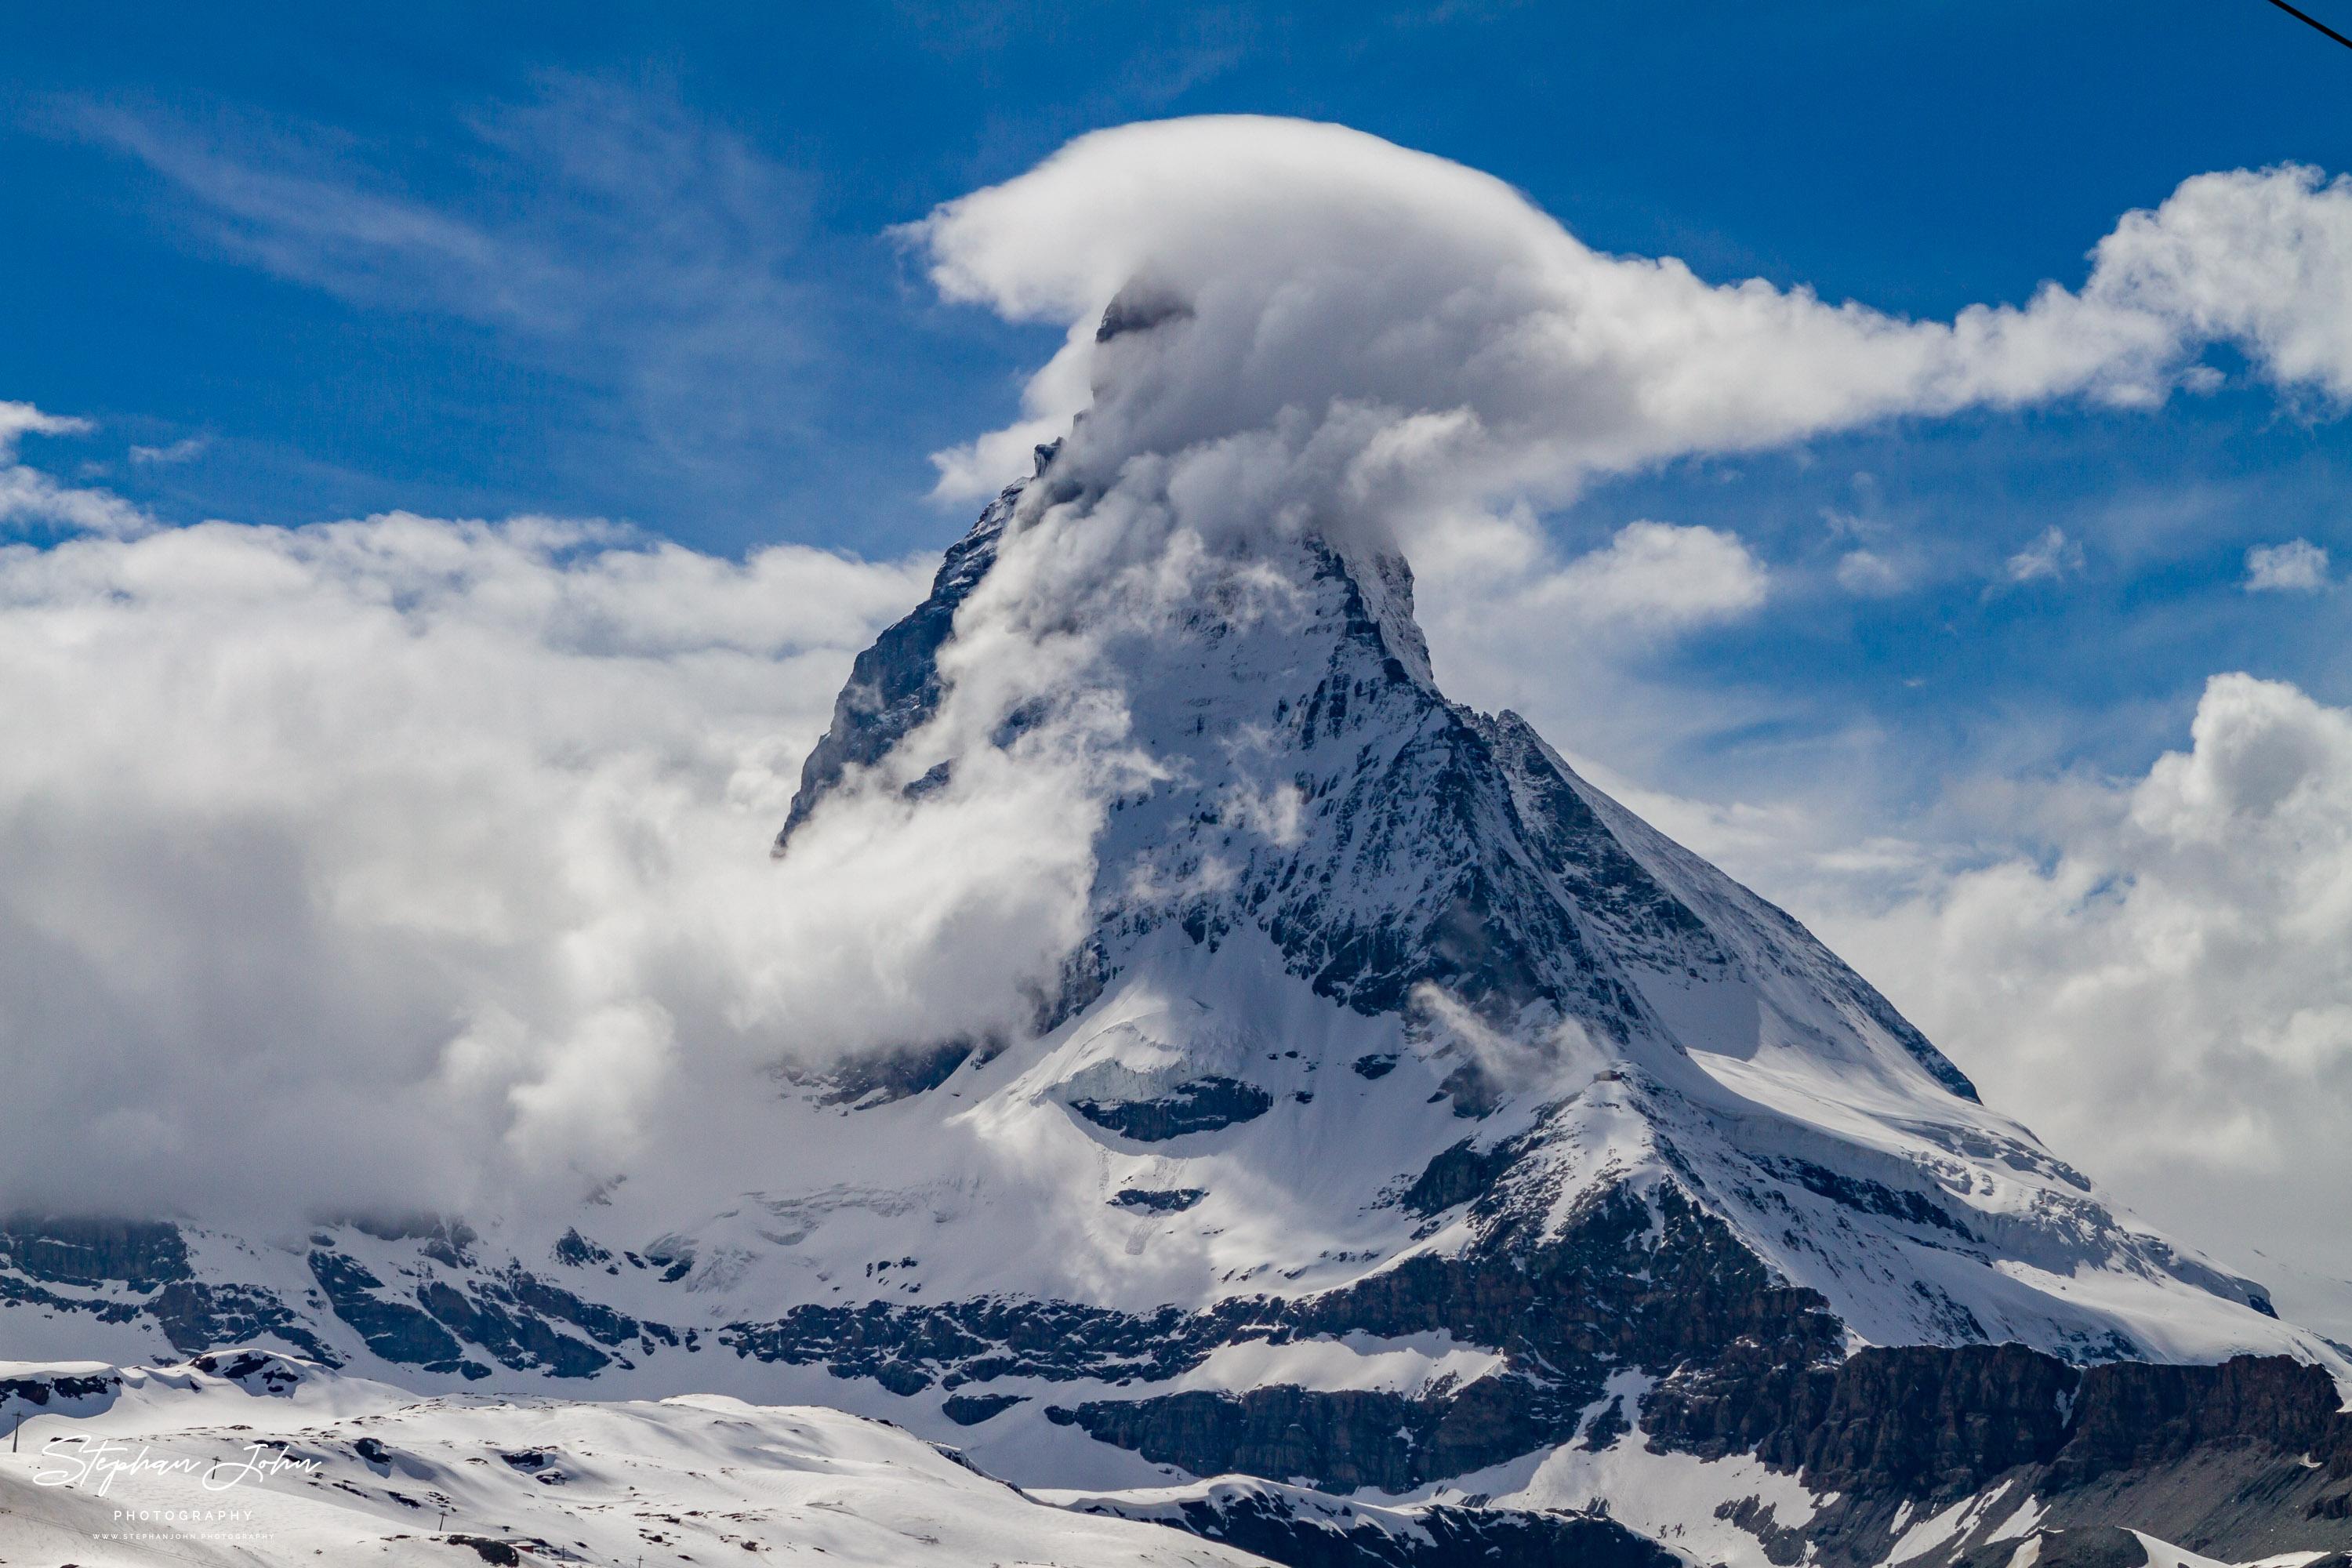 Das Matterhorn (4478 m ü. M.)